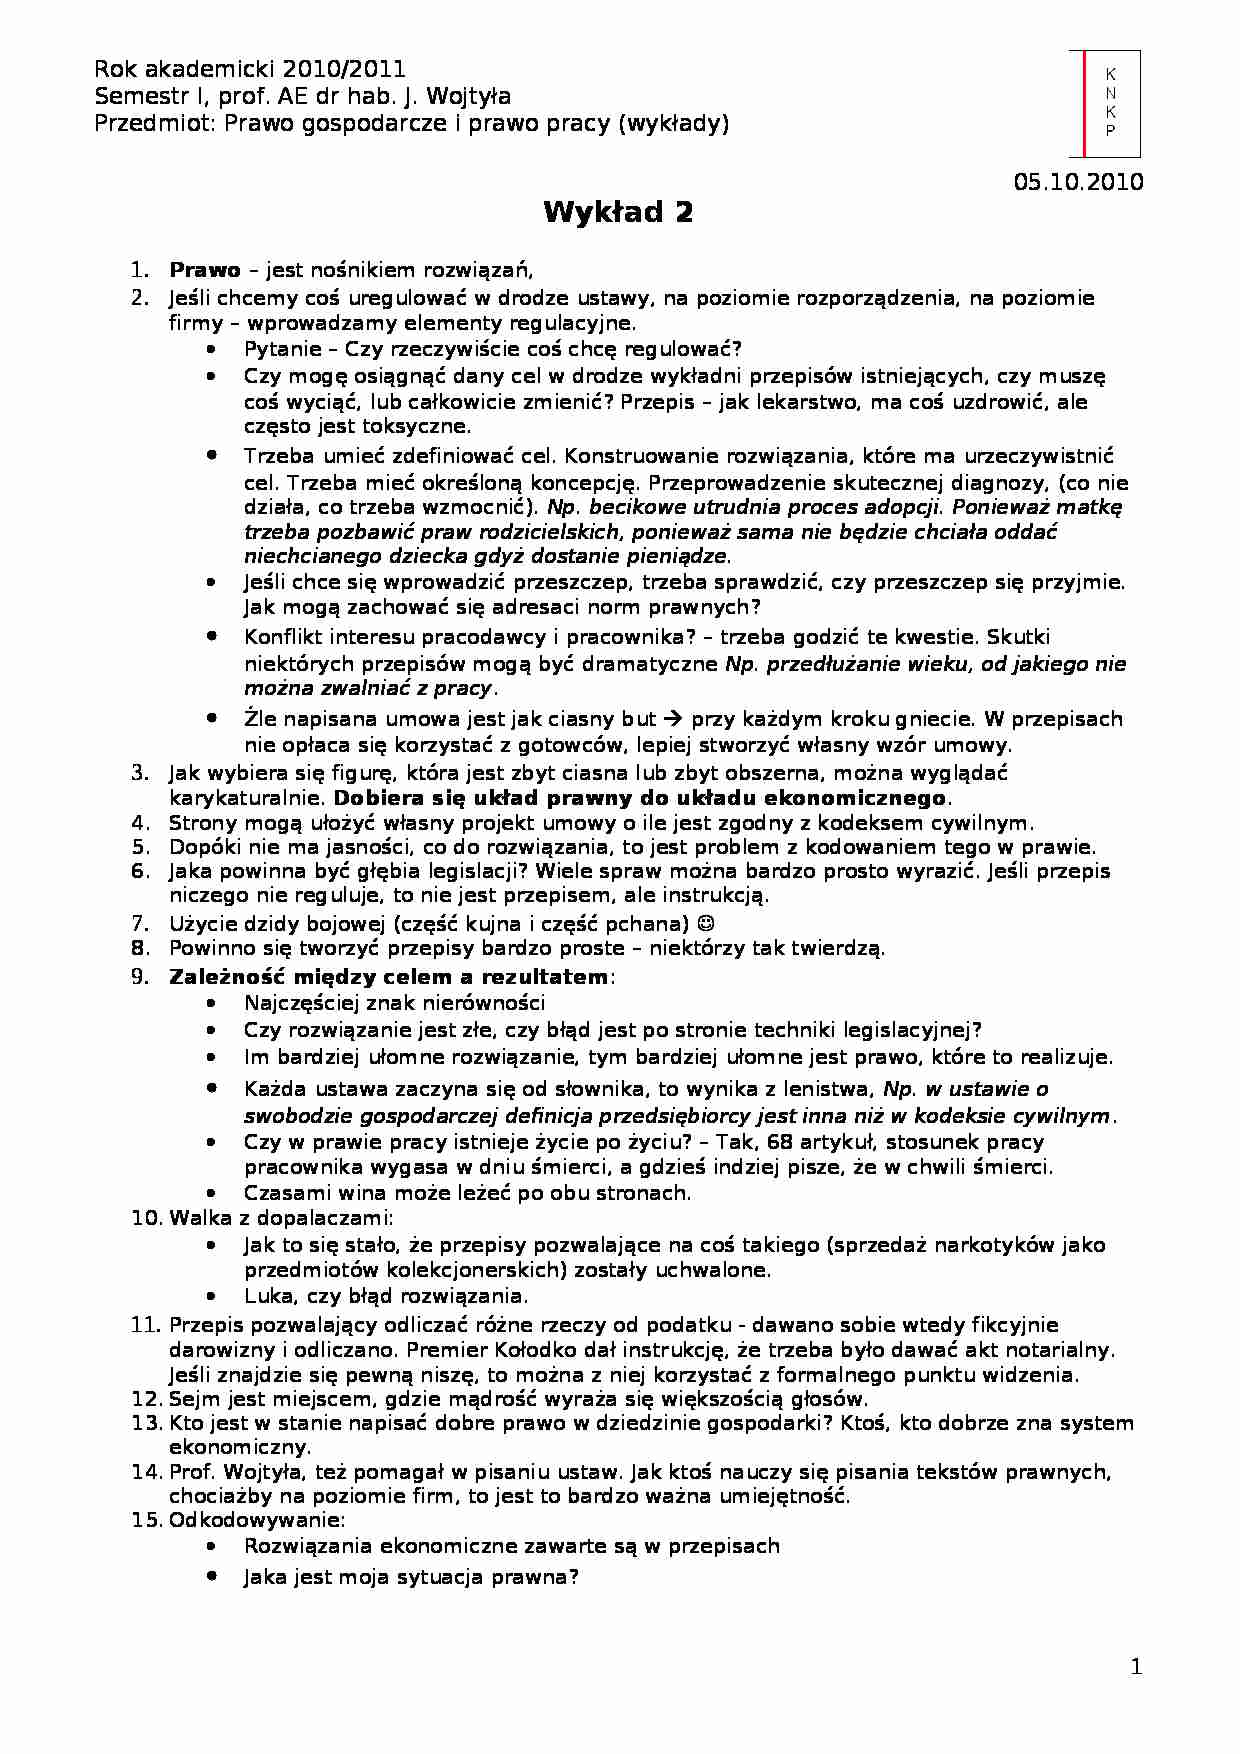 Regulacja prawa- wykład 2 - strona 1